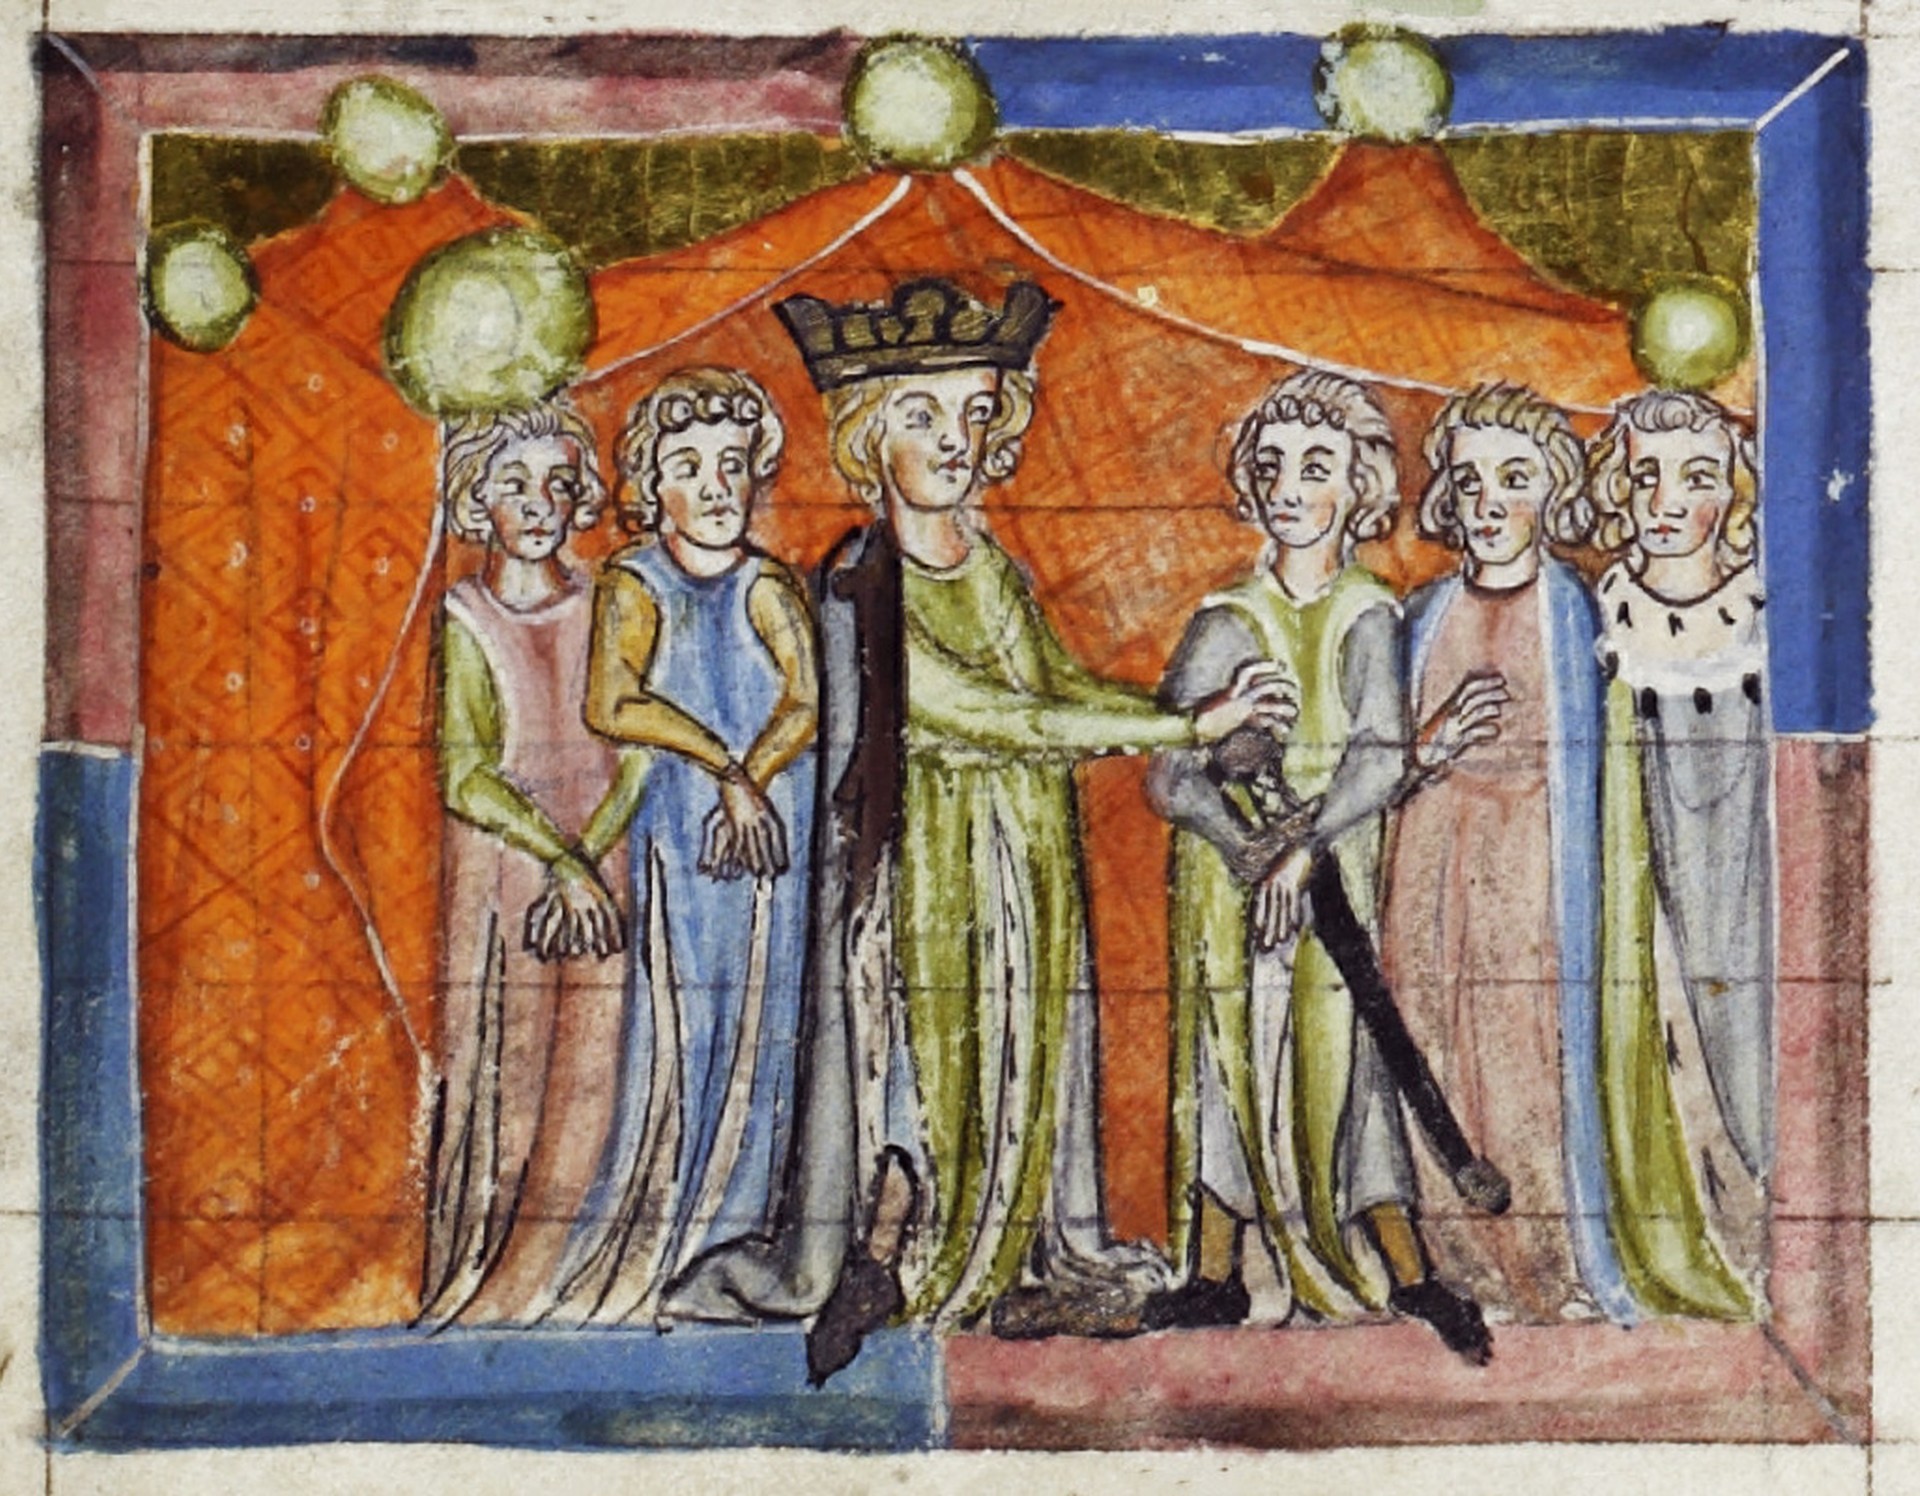 Das Bild zeigt mehrere Personen. In der Mitte sieht man einen Mann mit Krone, den König Barbarossa. Er trägt ein Schwert.